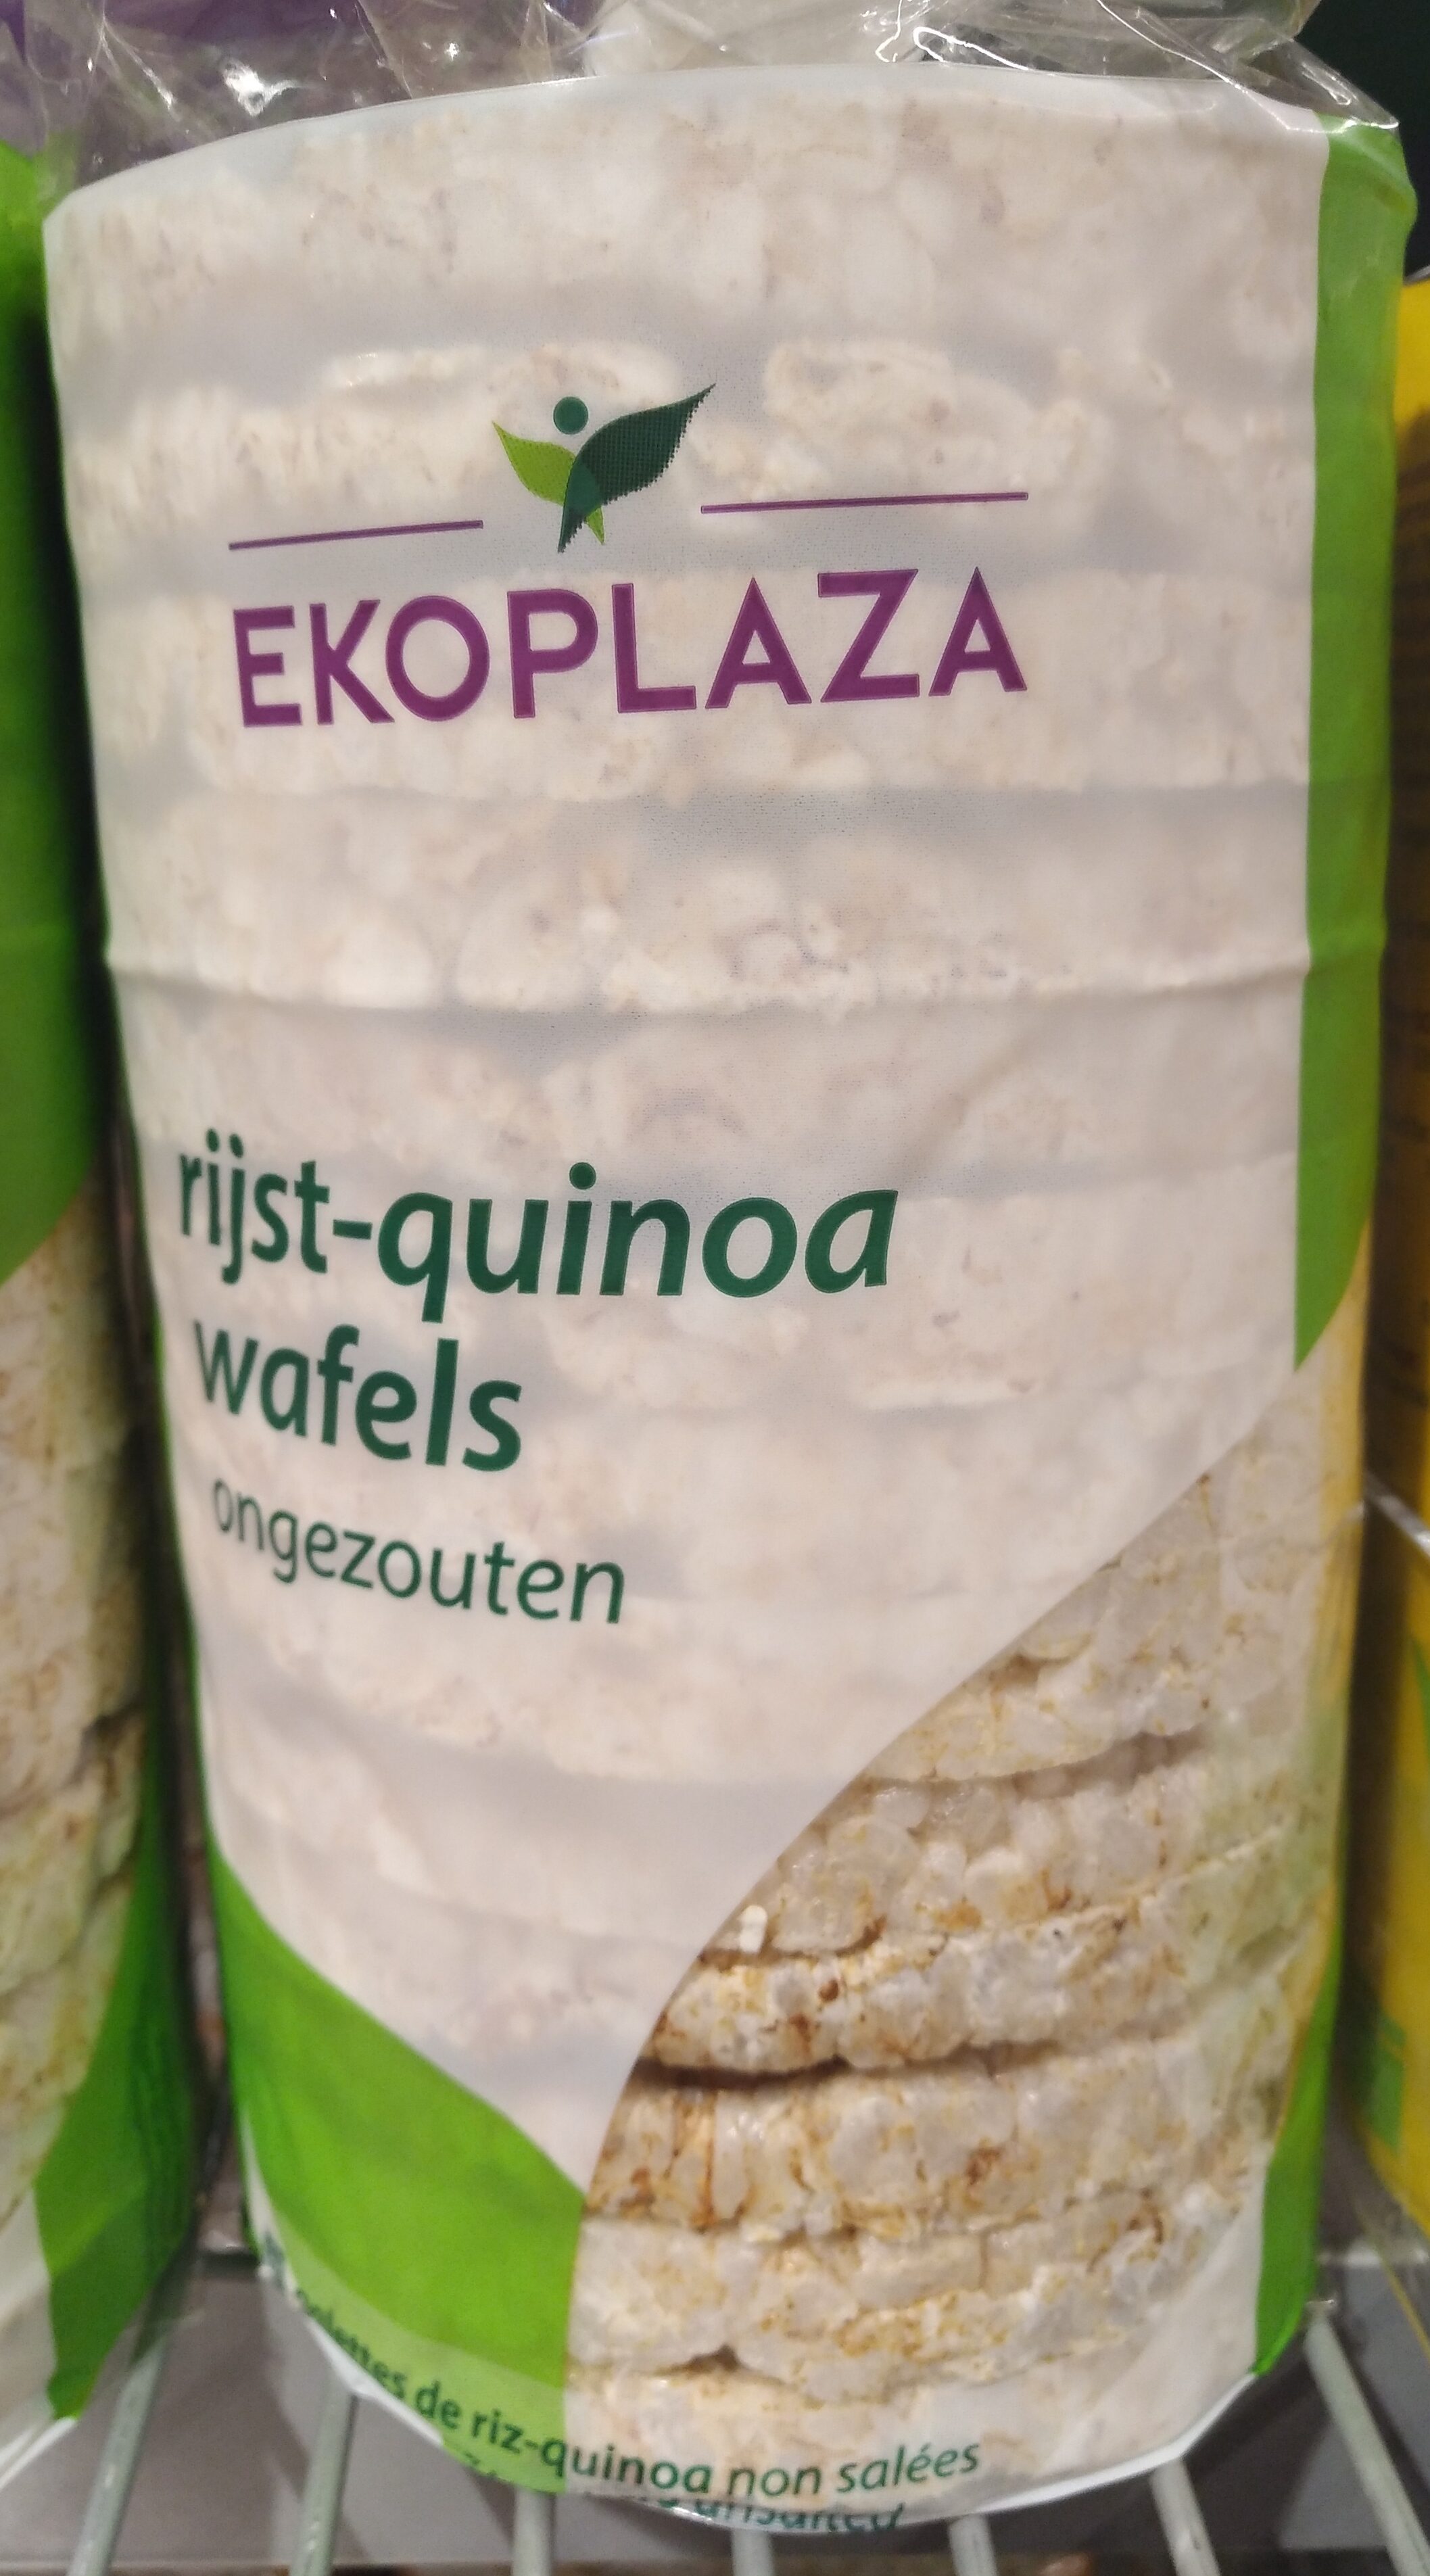 Rijst-quinoa wafels - Product